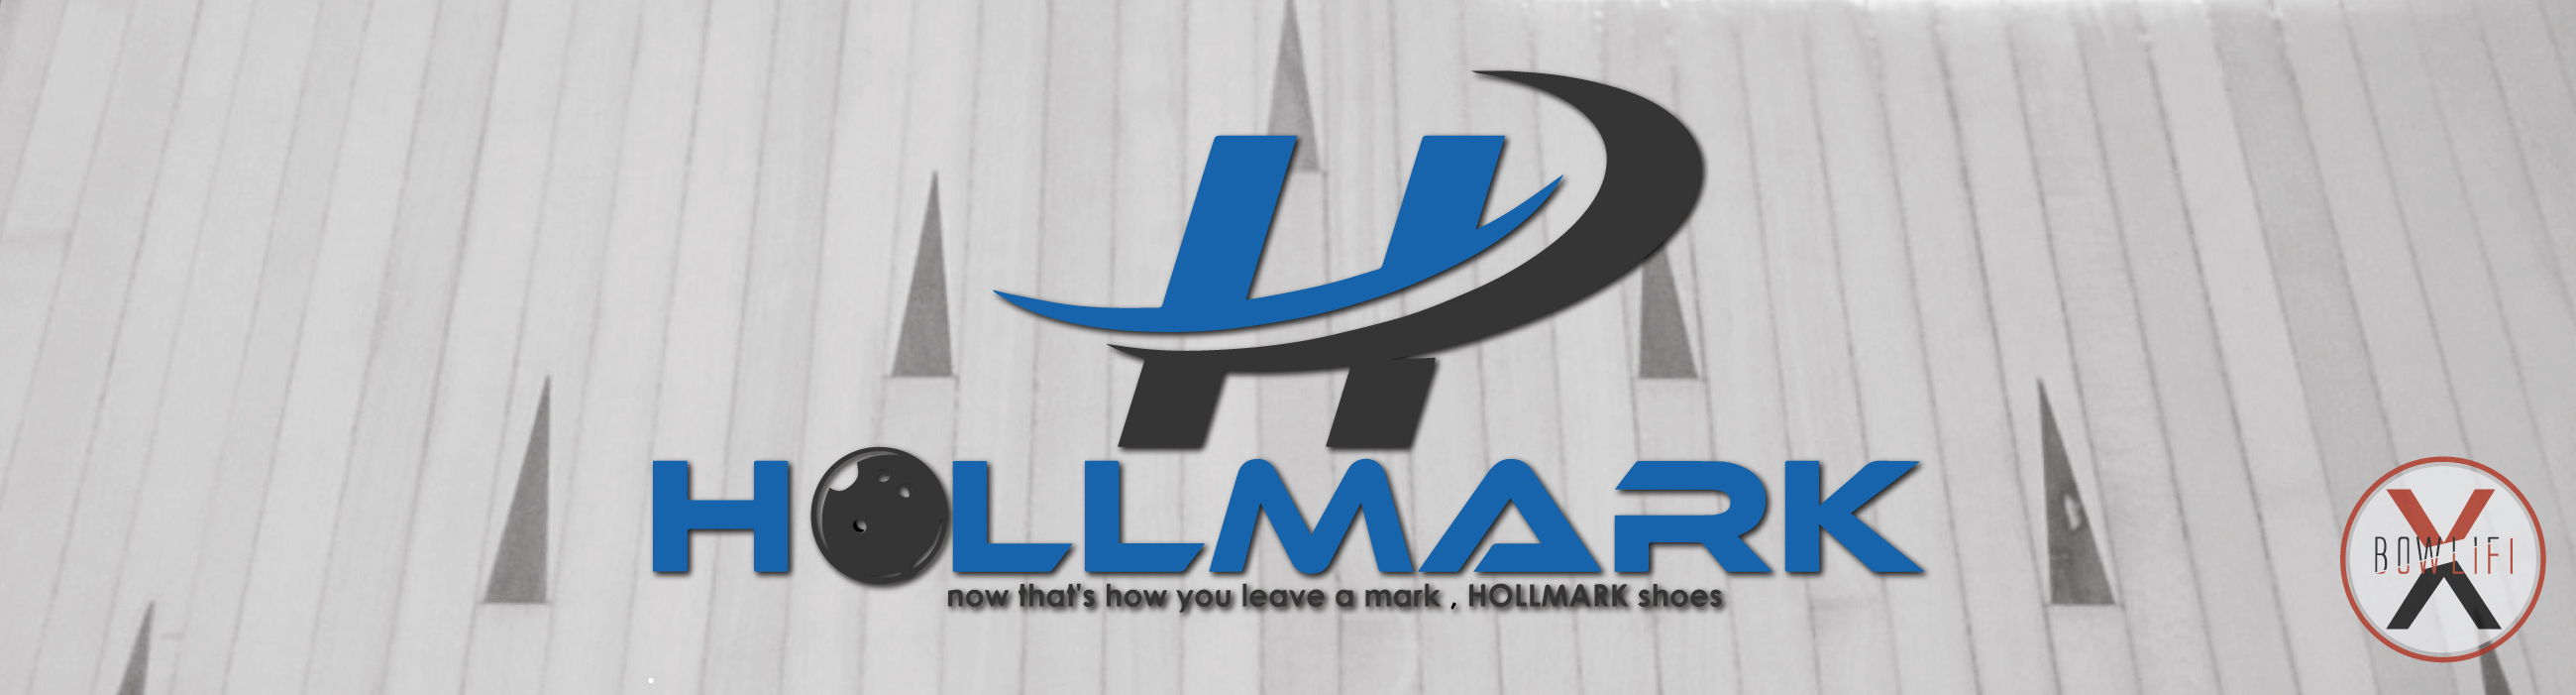 HollMark